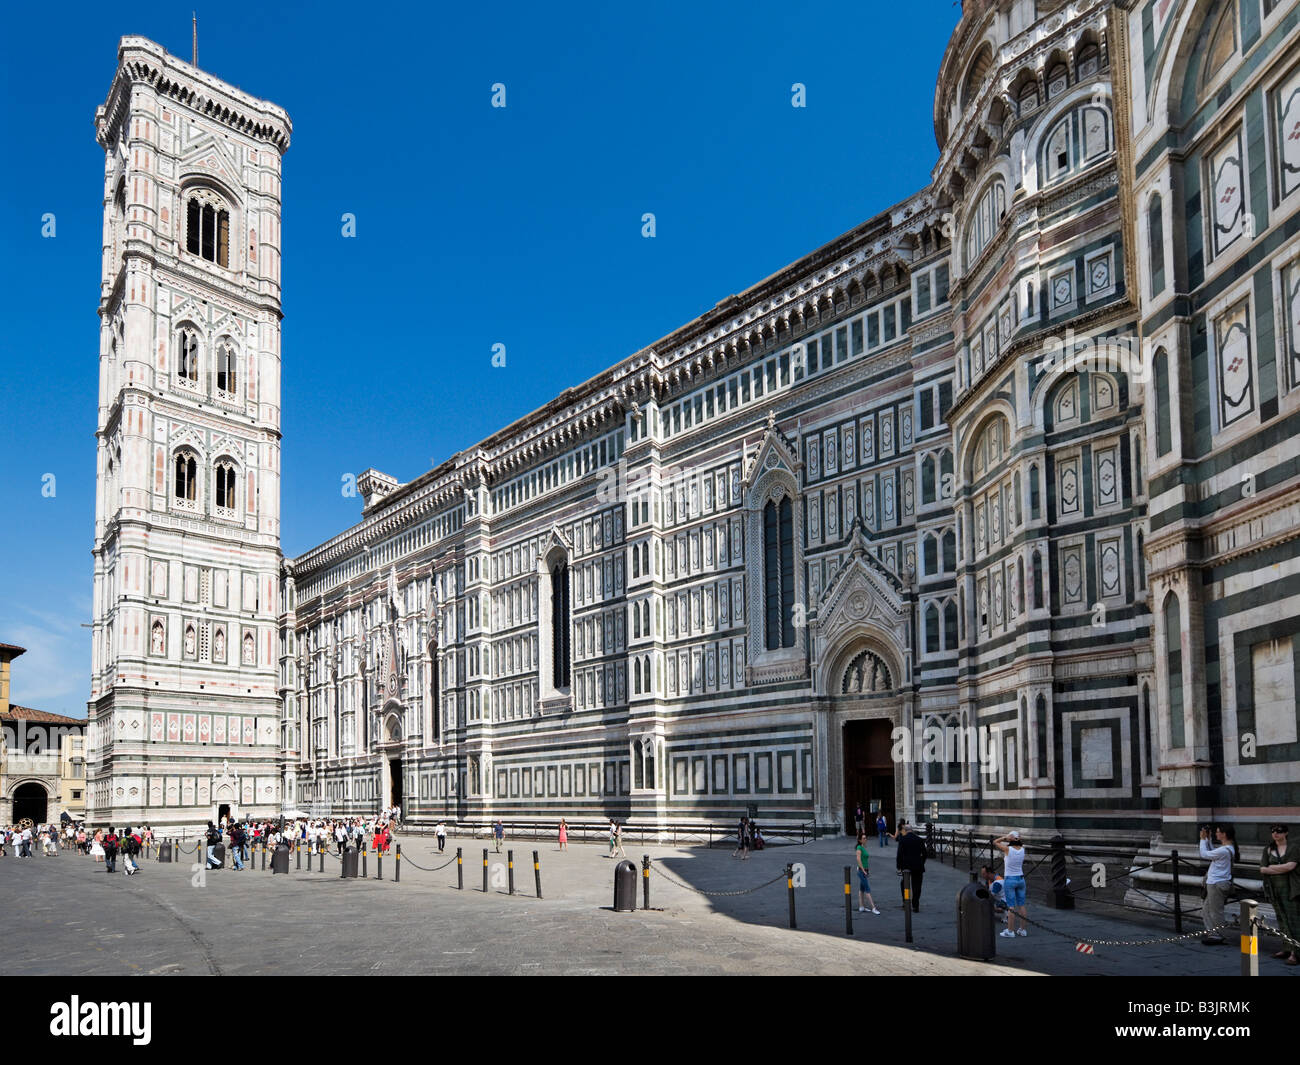 La Basílica di Santa Maria del Fiore (el Duomo) y el campanario de Giotto de la Piazza del Duomo, Florencia, Toscana, Italia Foto de stock